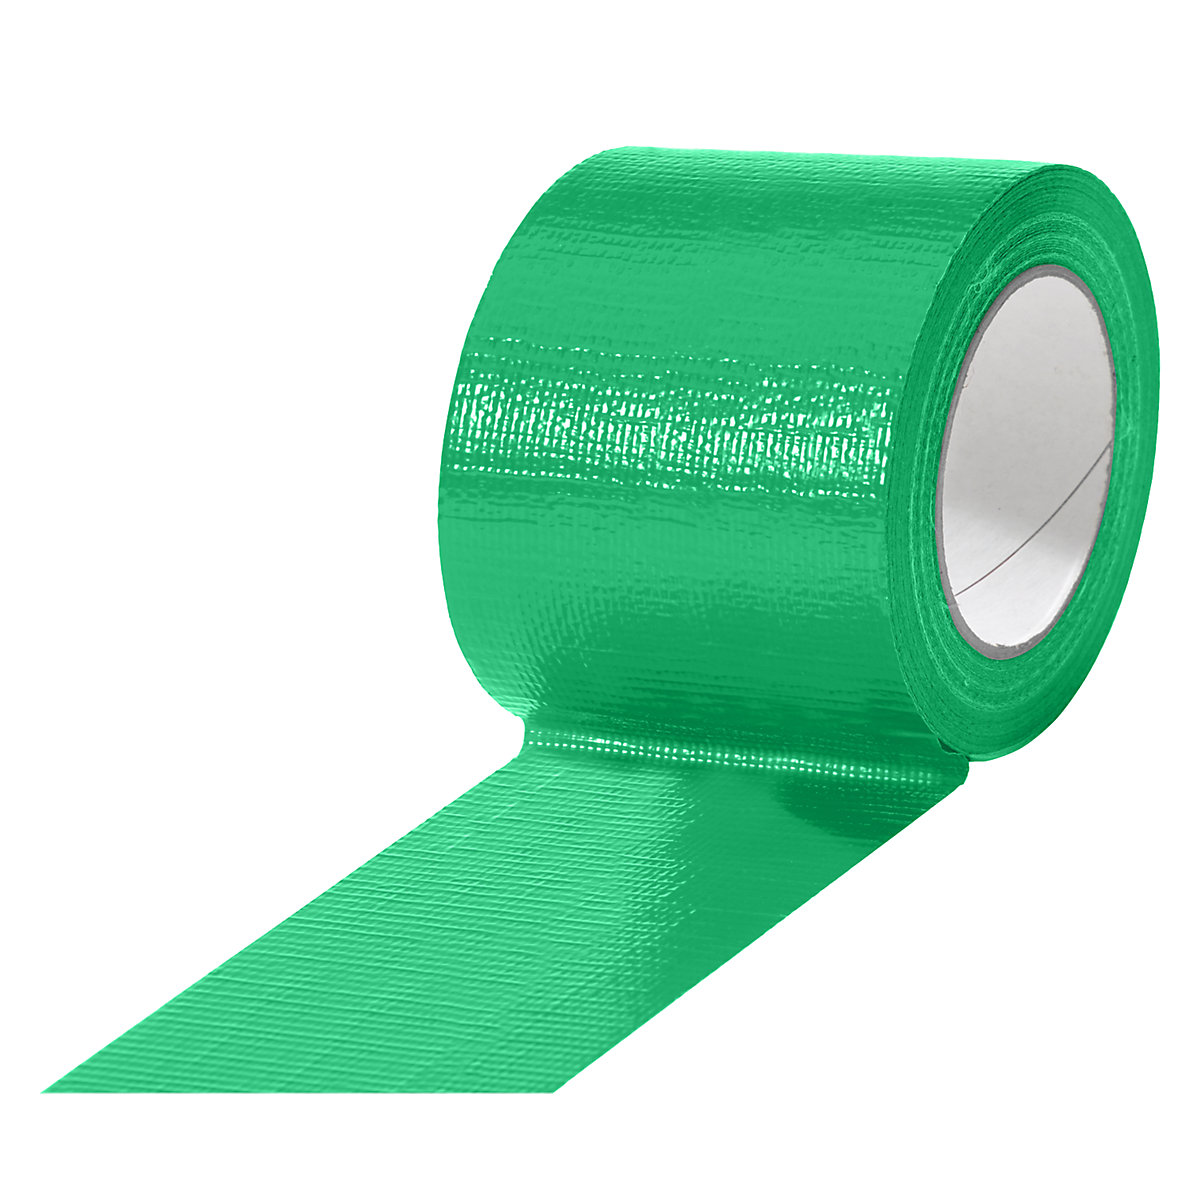 Gewebeband, in verschiedenen Farben, VE 12 Rollen, grün, Bandbreite 75 mm-9